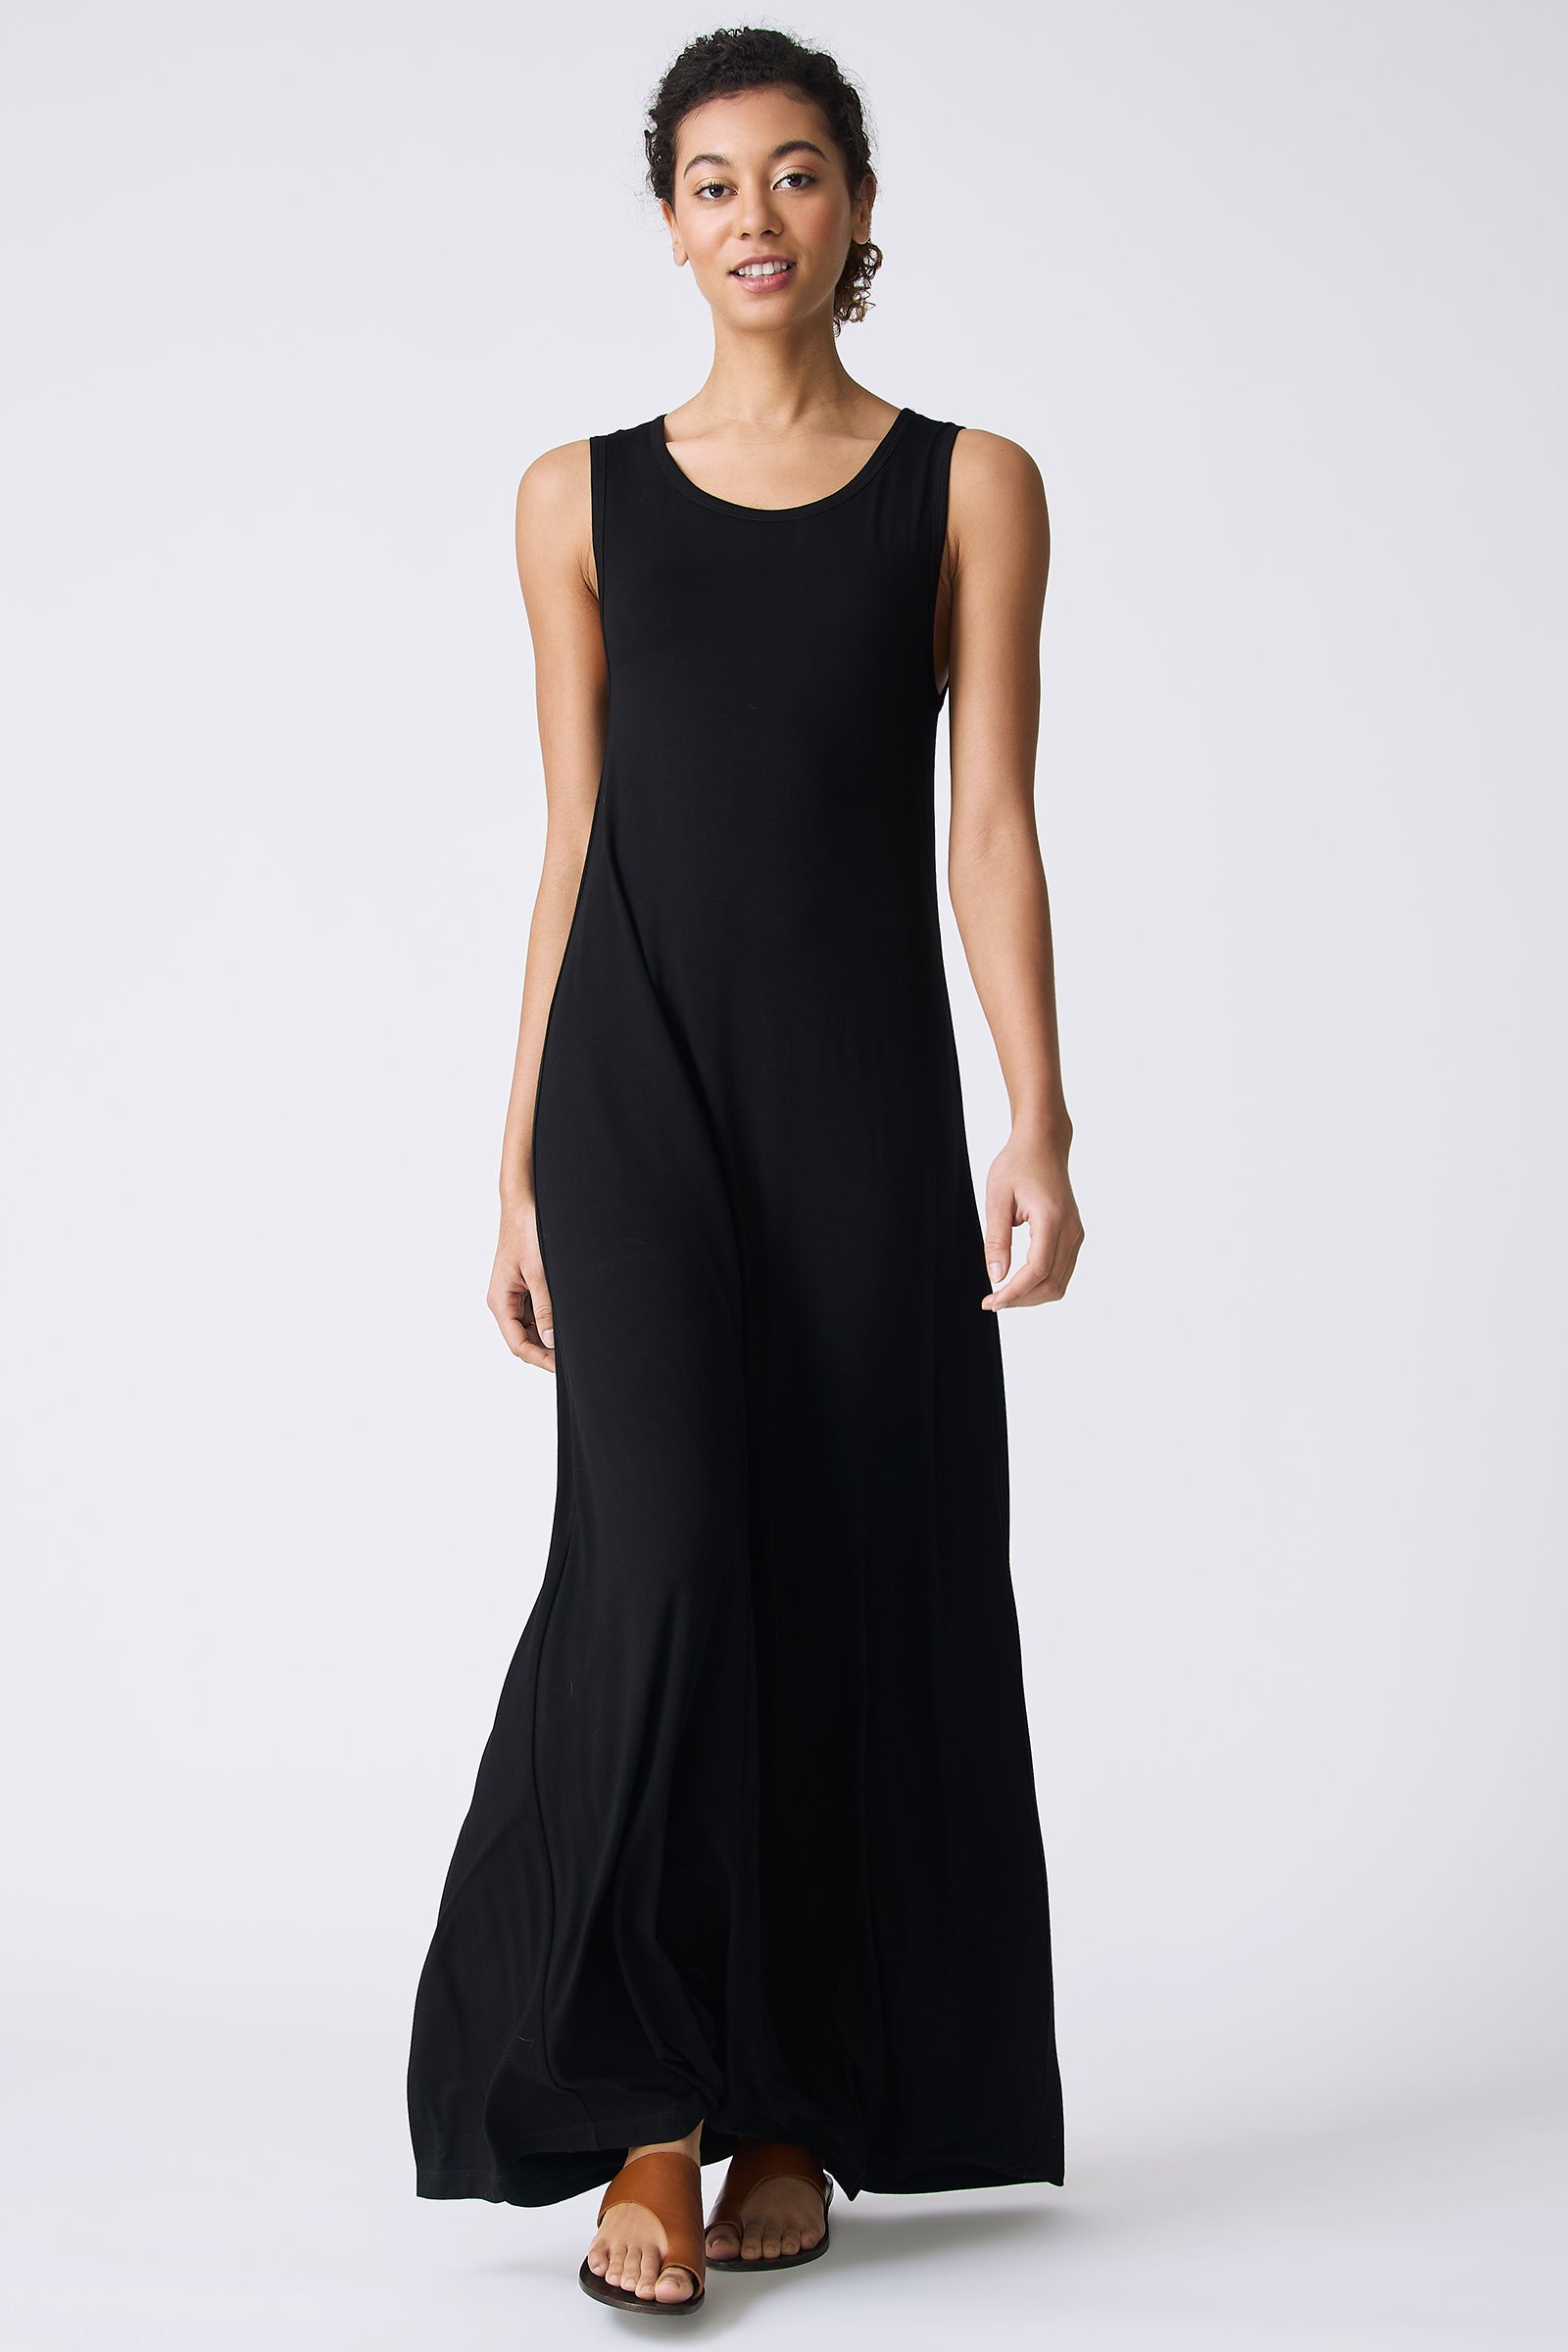 Kal Rieman Sophia Maxi Dress in Black on model walking full front view